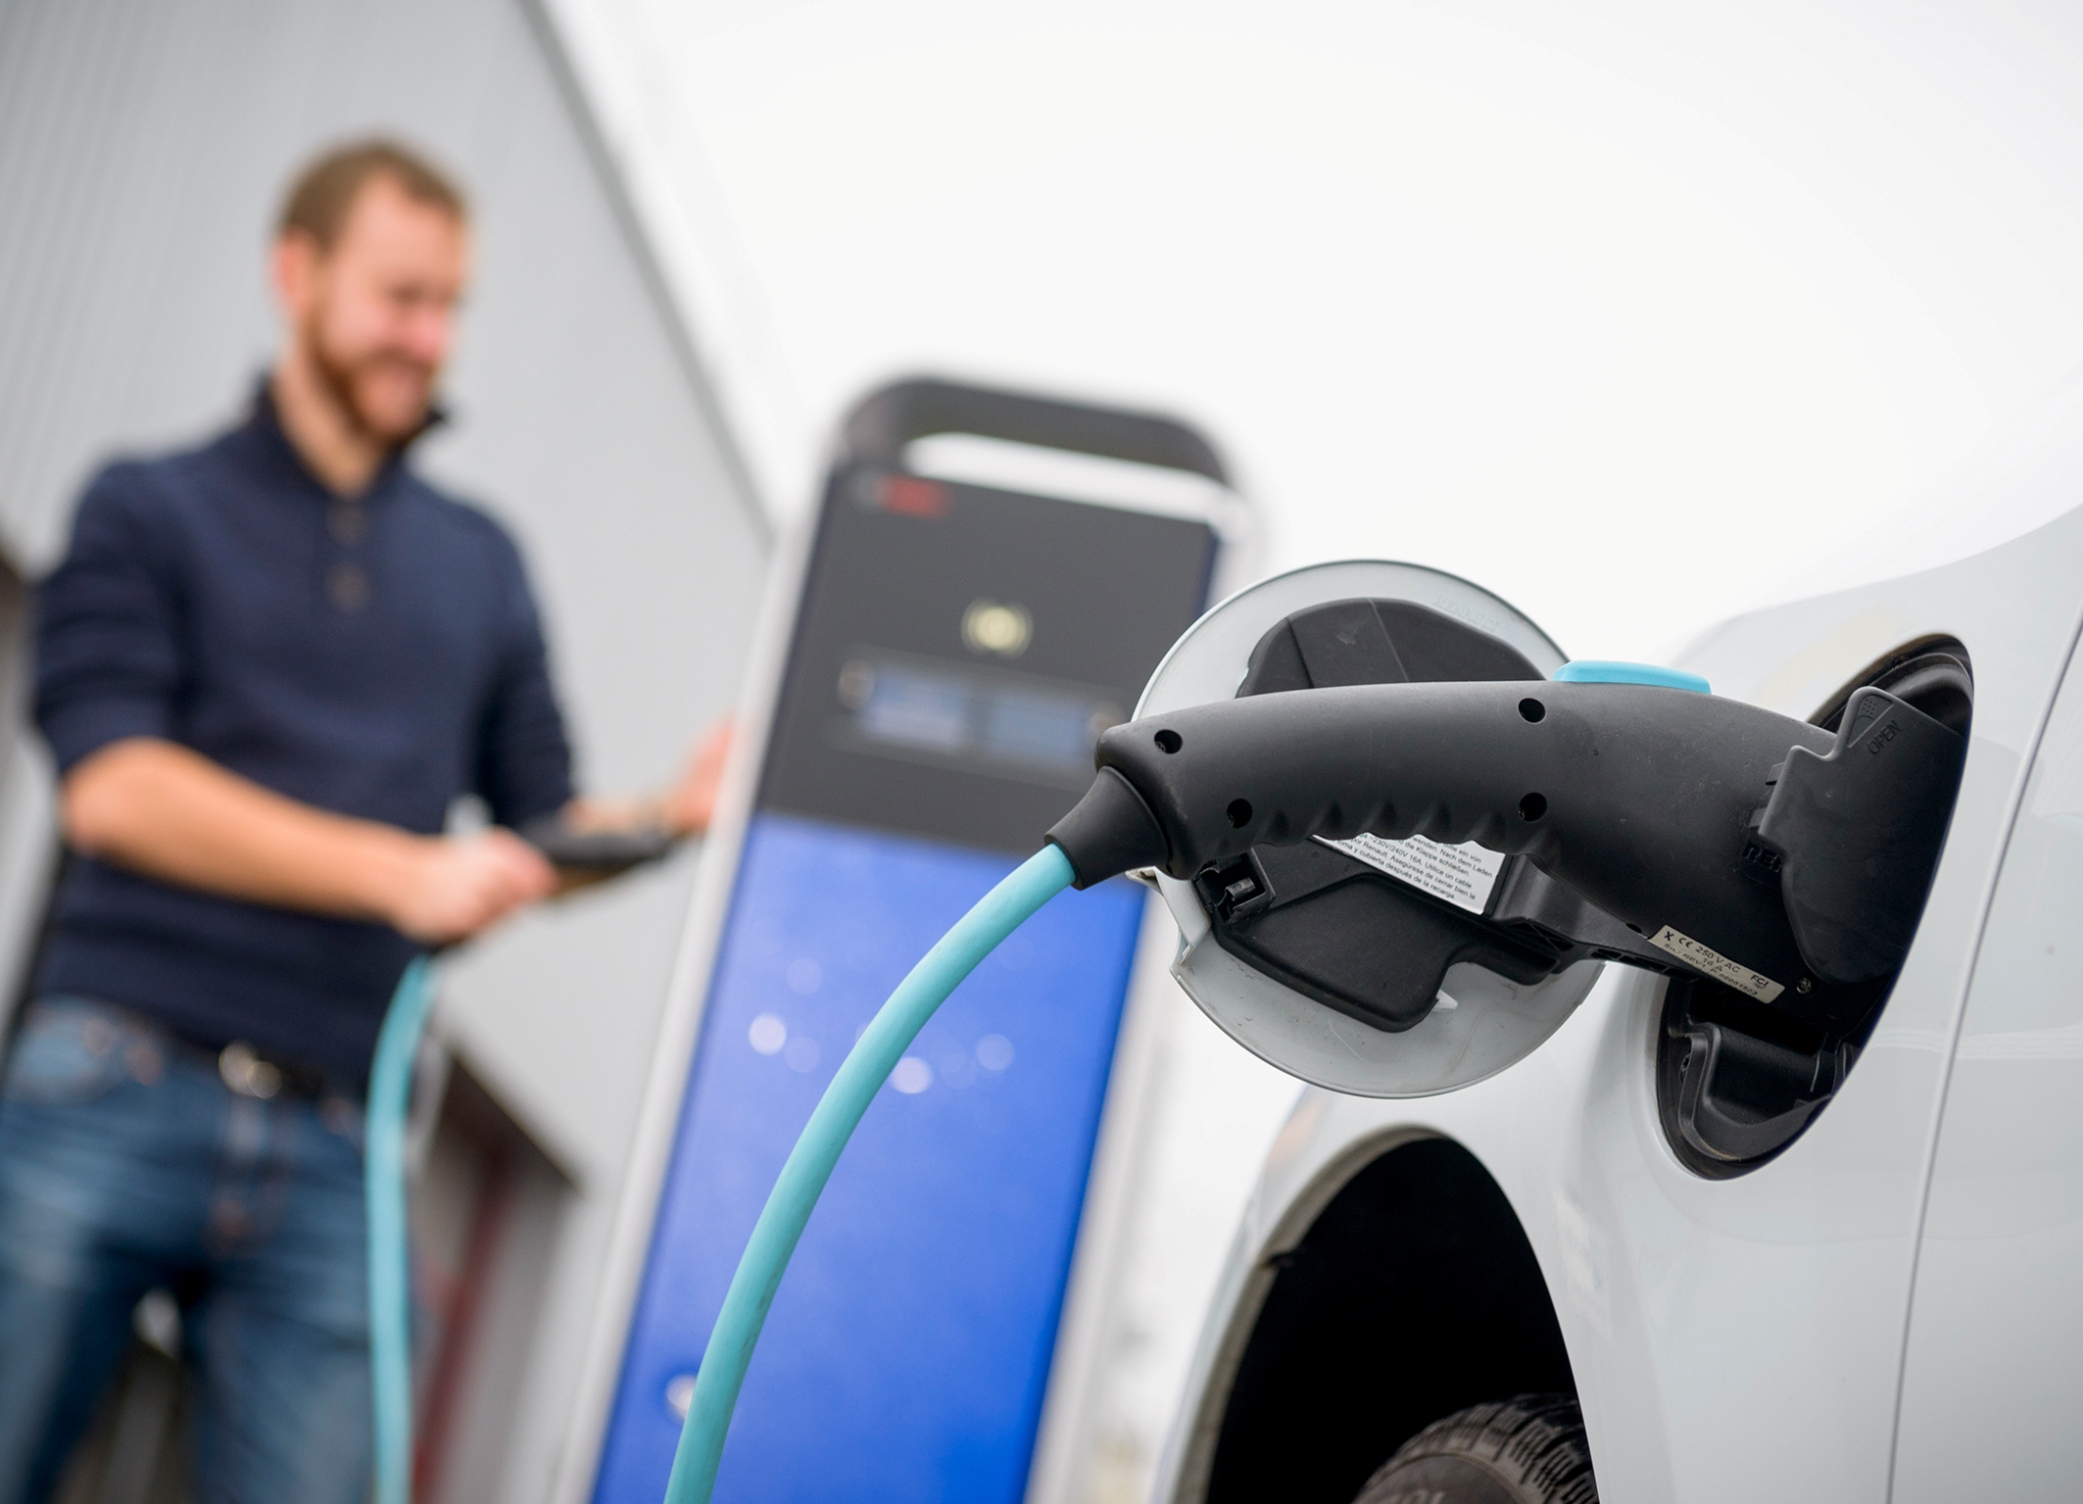 International Vienna Motor Symposium 2015 - Elettrificazione e Internet nelle auto: come Bosch sta connettendo le nuove tecnologie a benzina e diesel